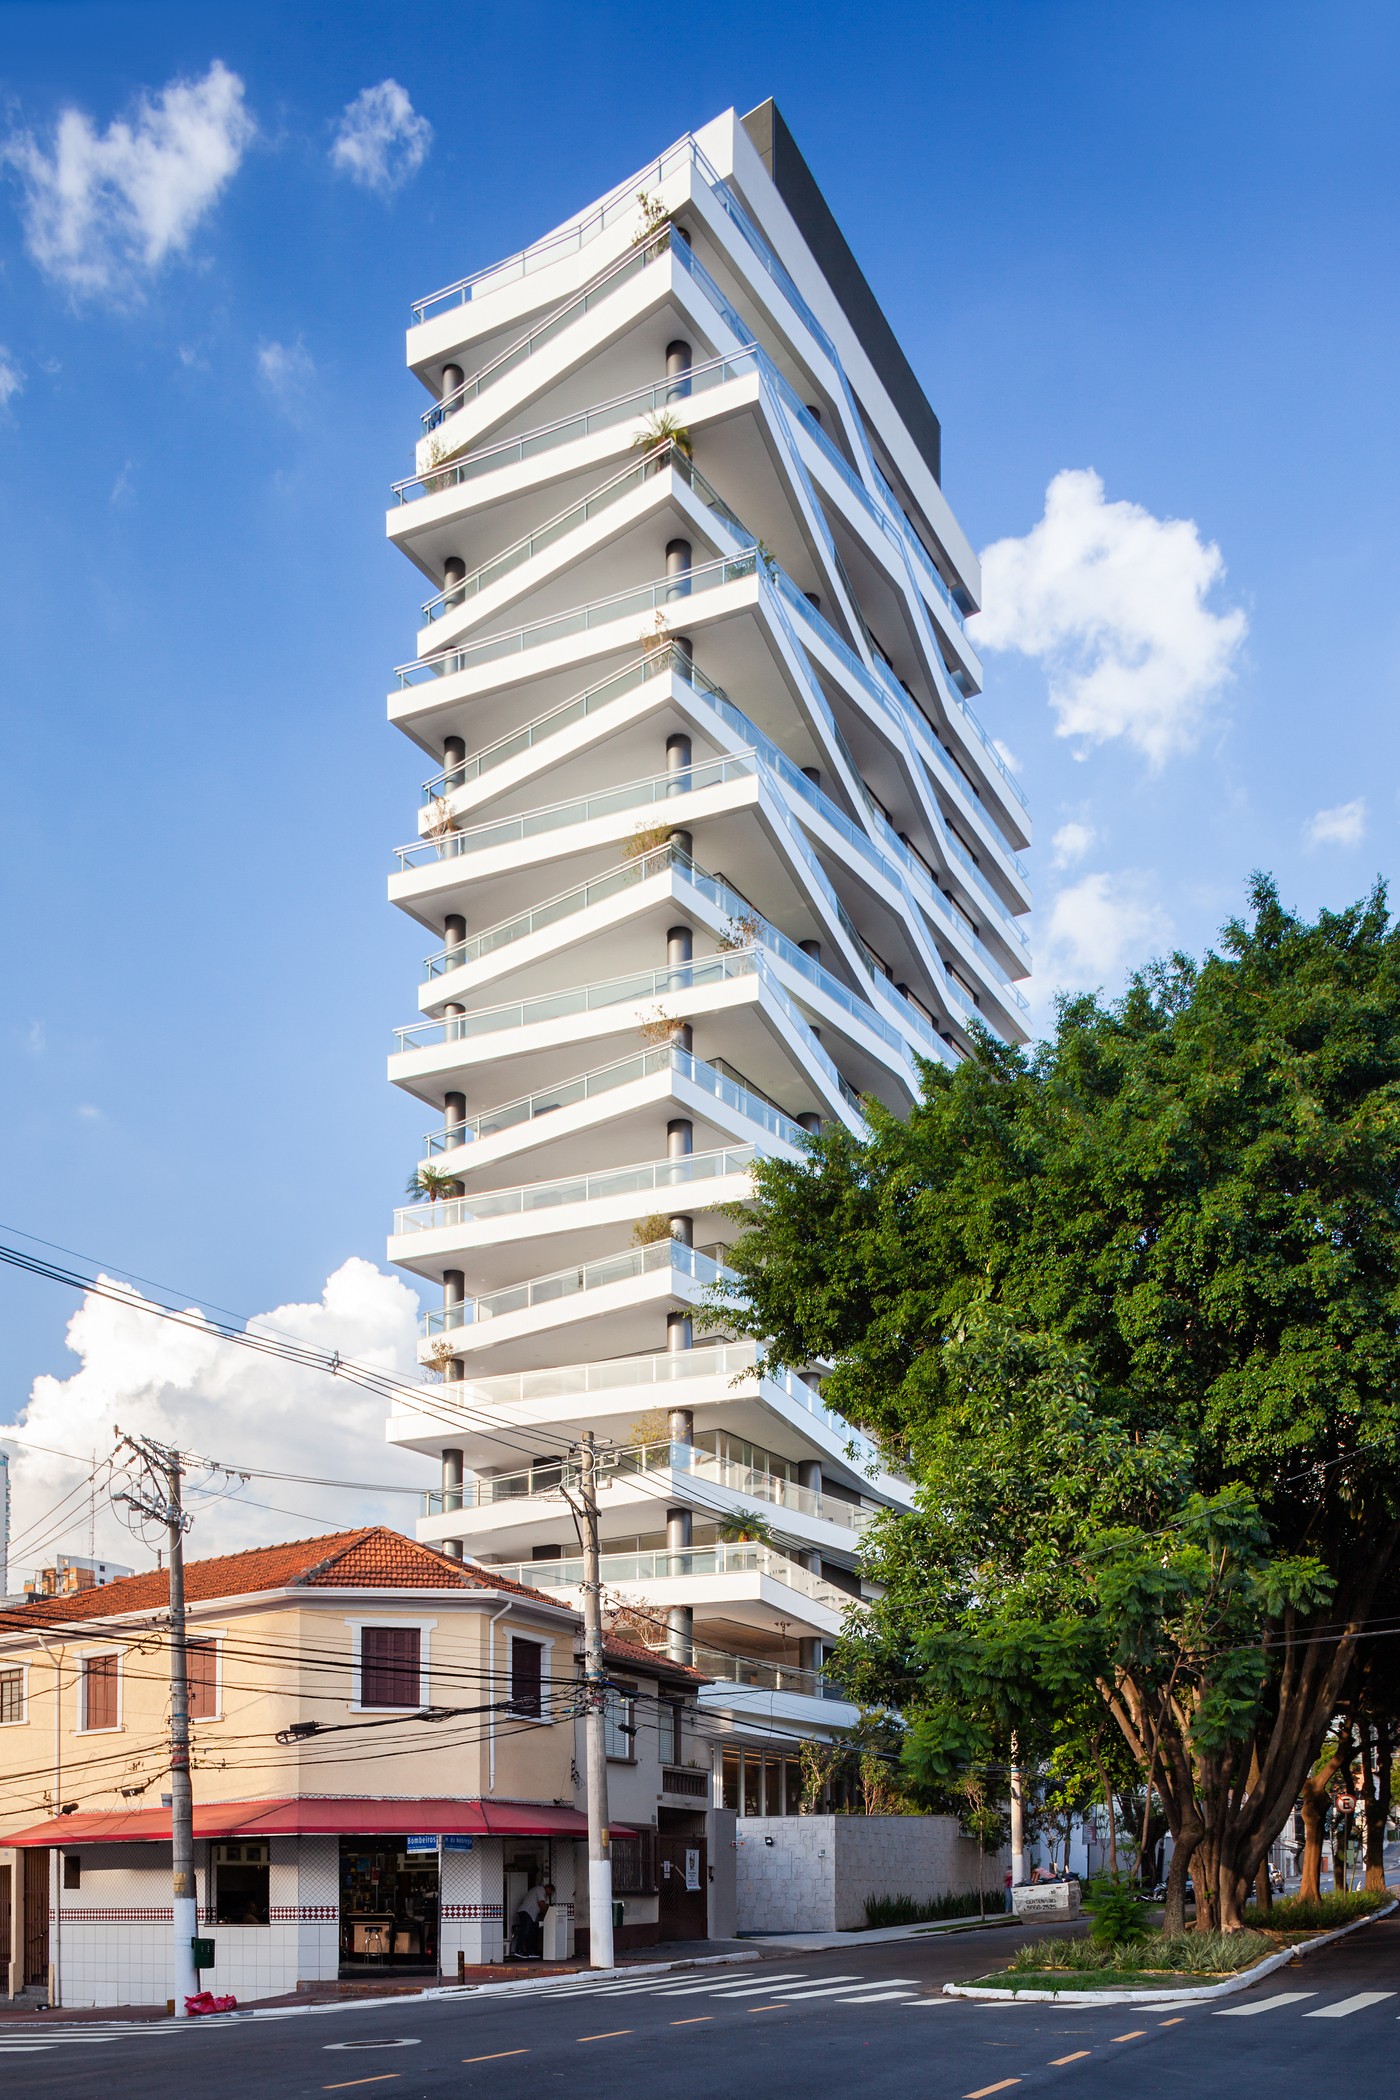 Edifício residencial em São Paulo exibe varandas inclinadas (Foto: Pedro Vannucchi)